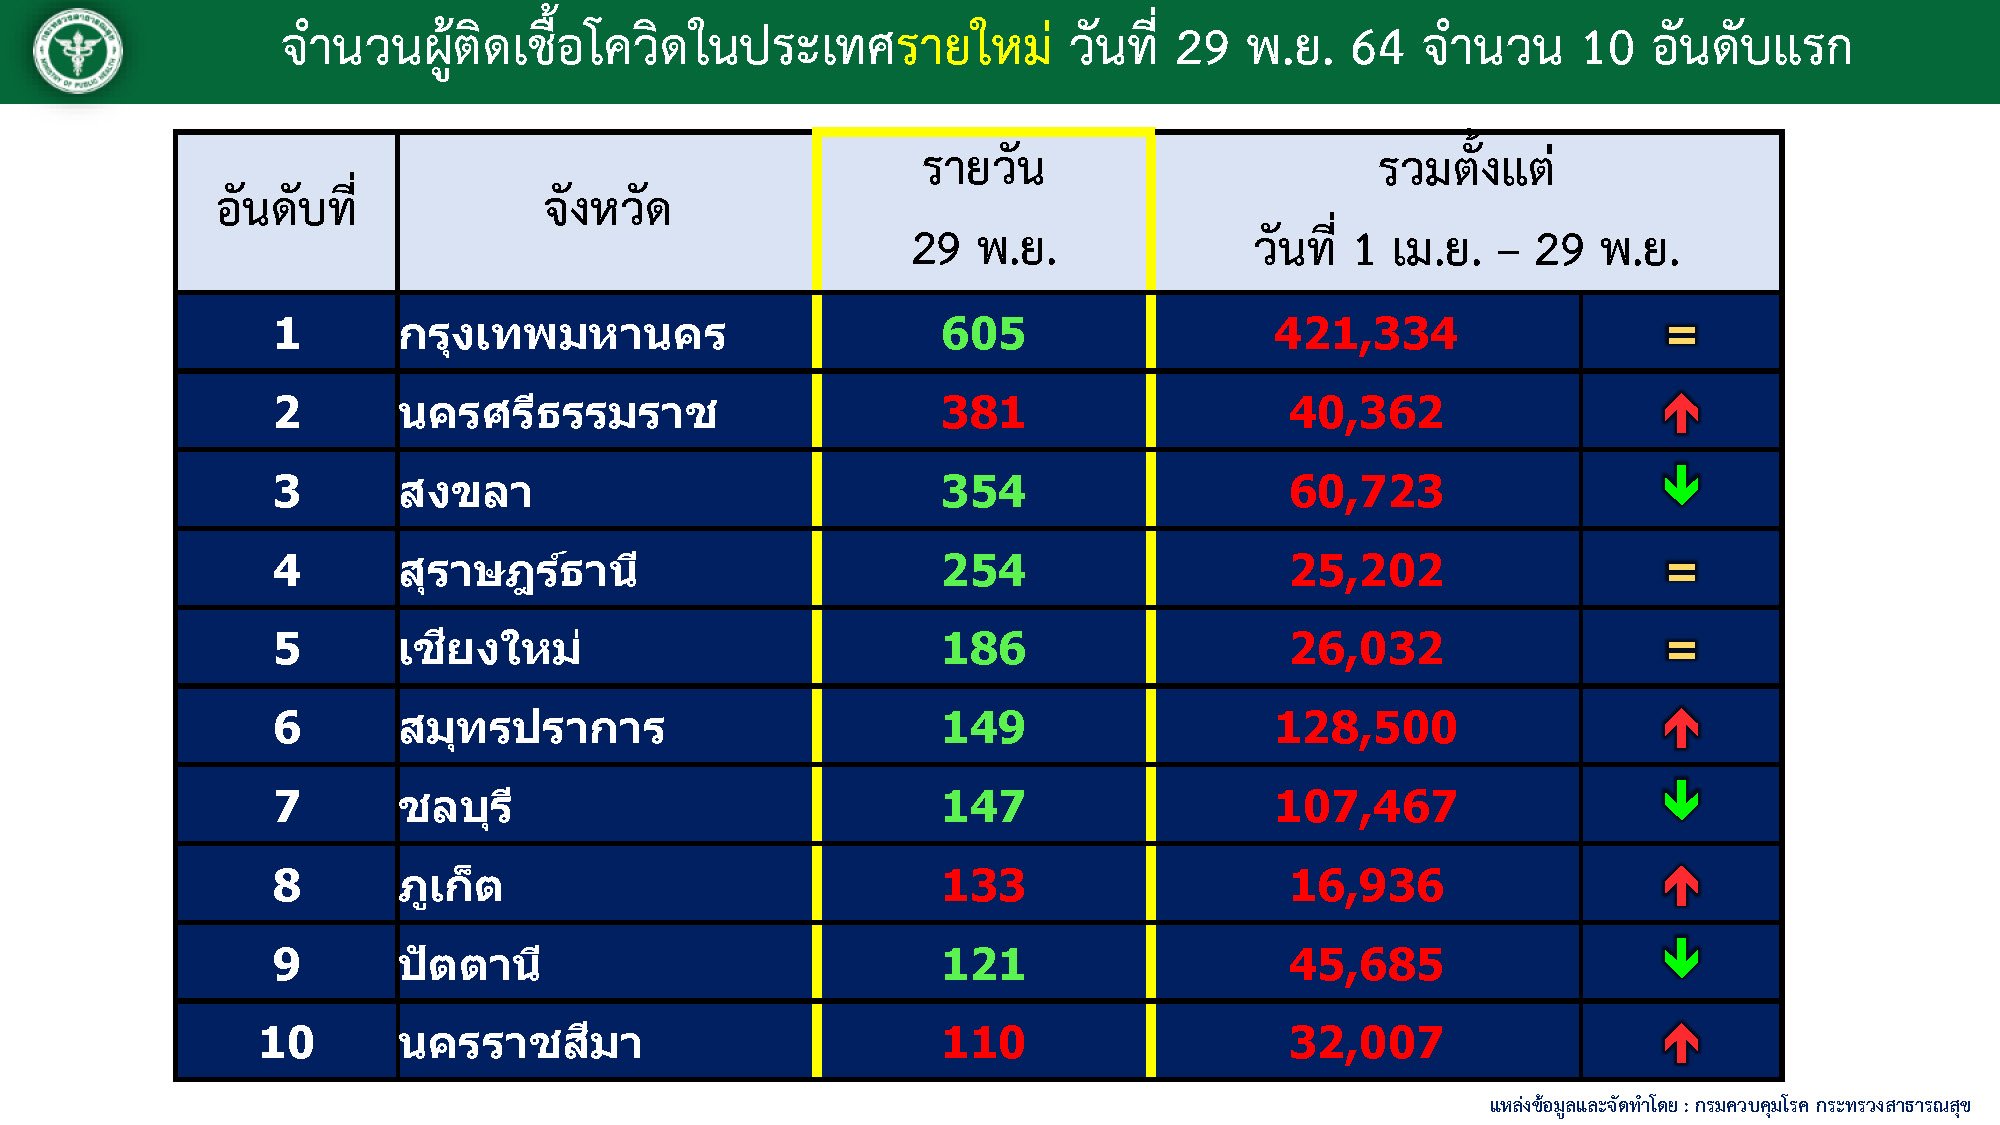 จังหวัดจำนวนผู้ติดเชื้อโควิดในประเทศไทยรายใหม่สูงสุด วันที่ 29 พ.ย. 64